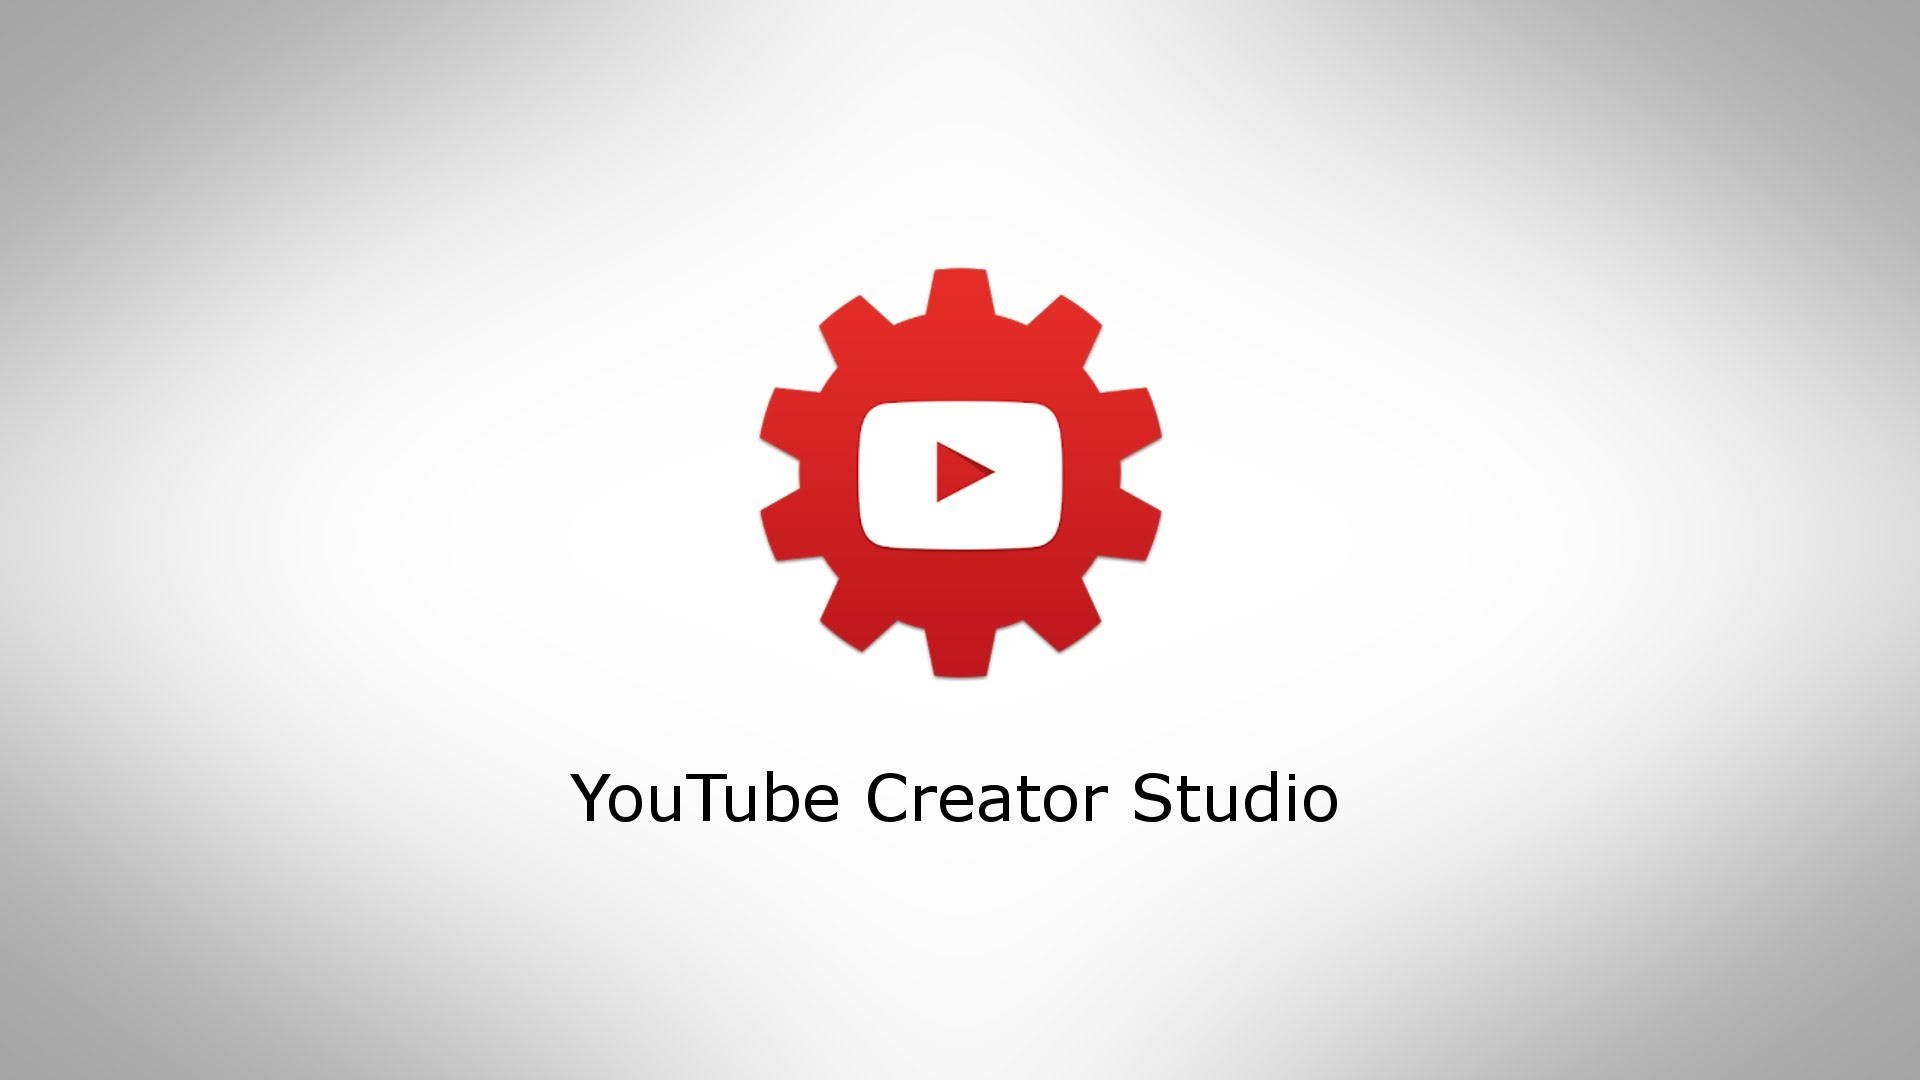 Ютуб пк версия войти творческая студия. Youtube Studio. Ютуб студия. Youtube creator Studio. Творческая студия ютуб.